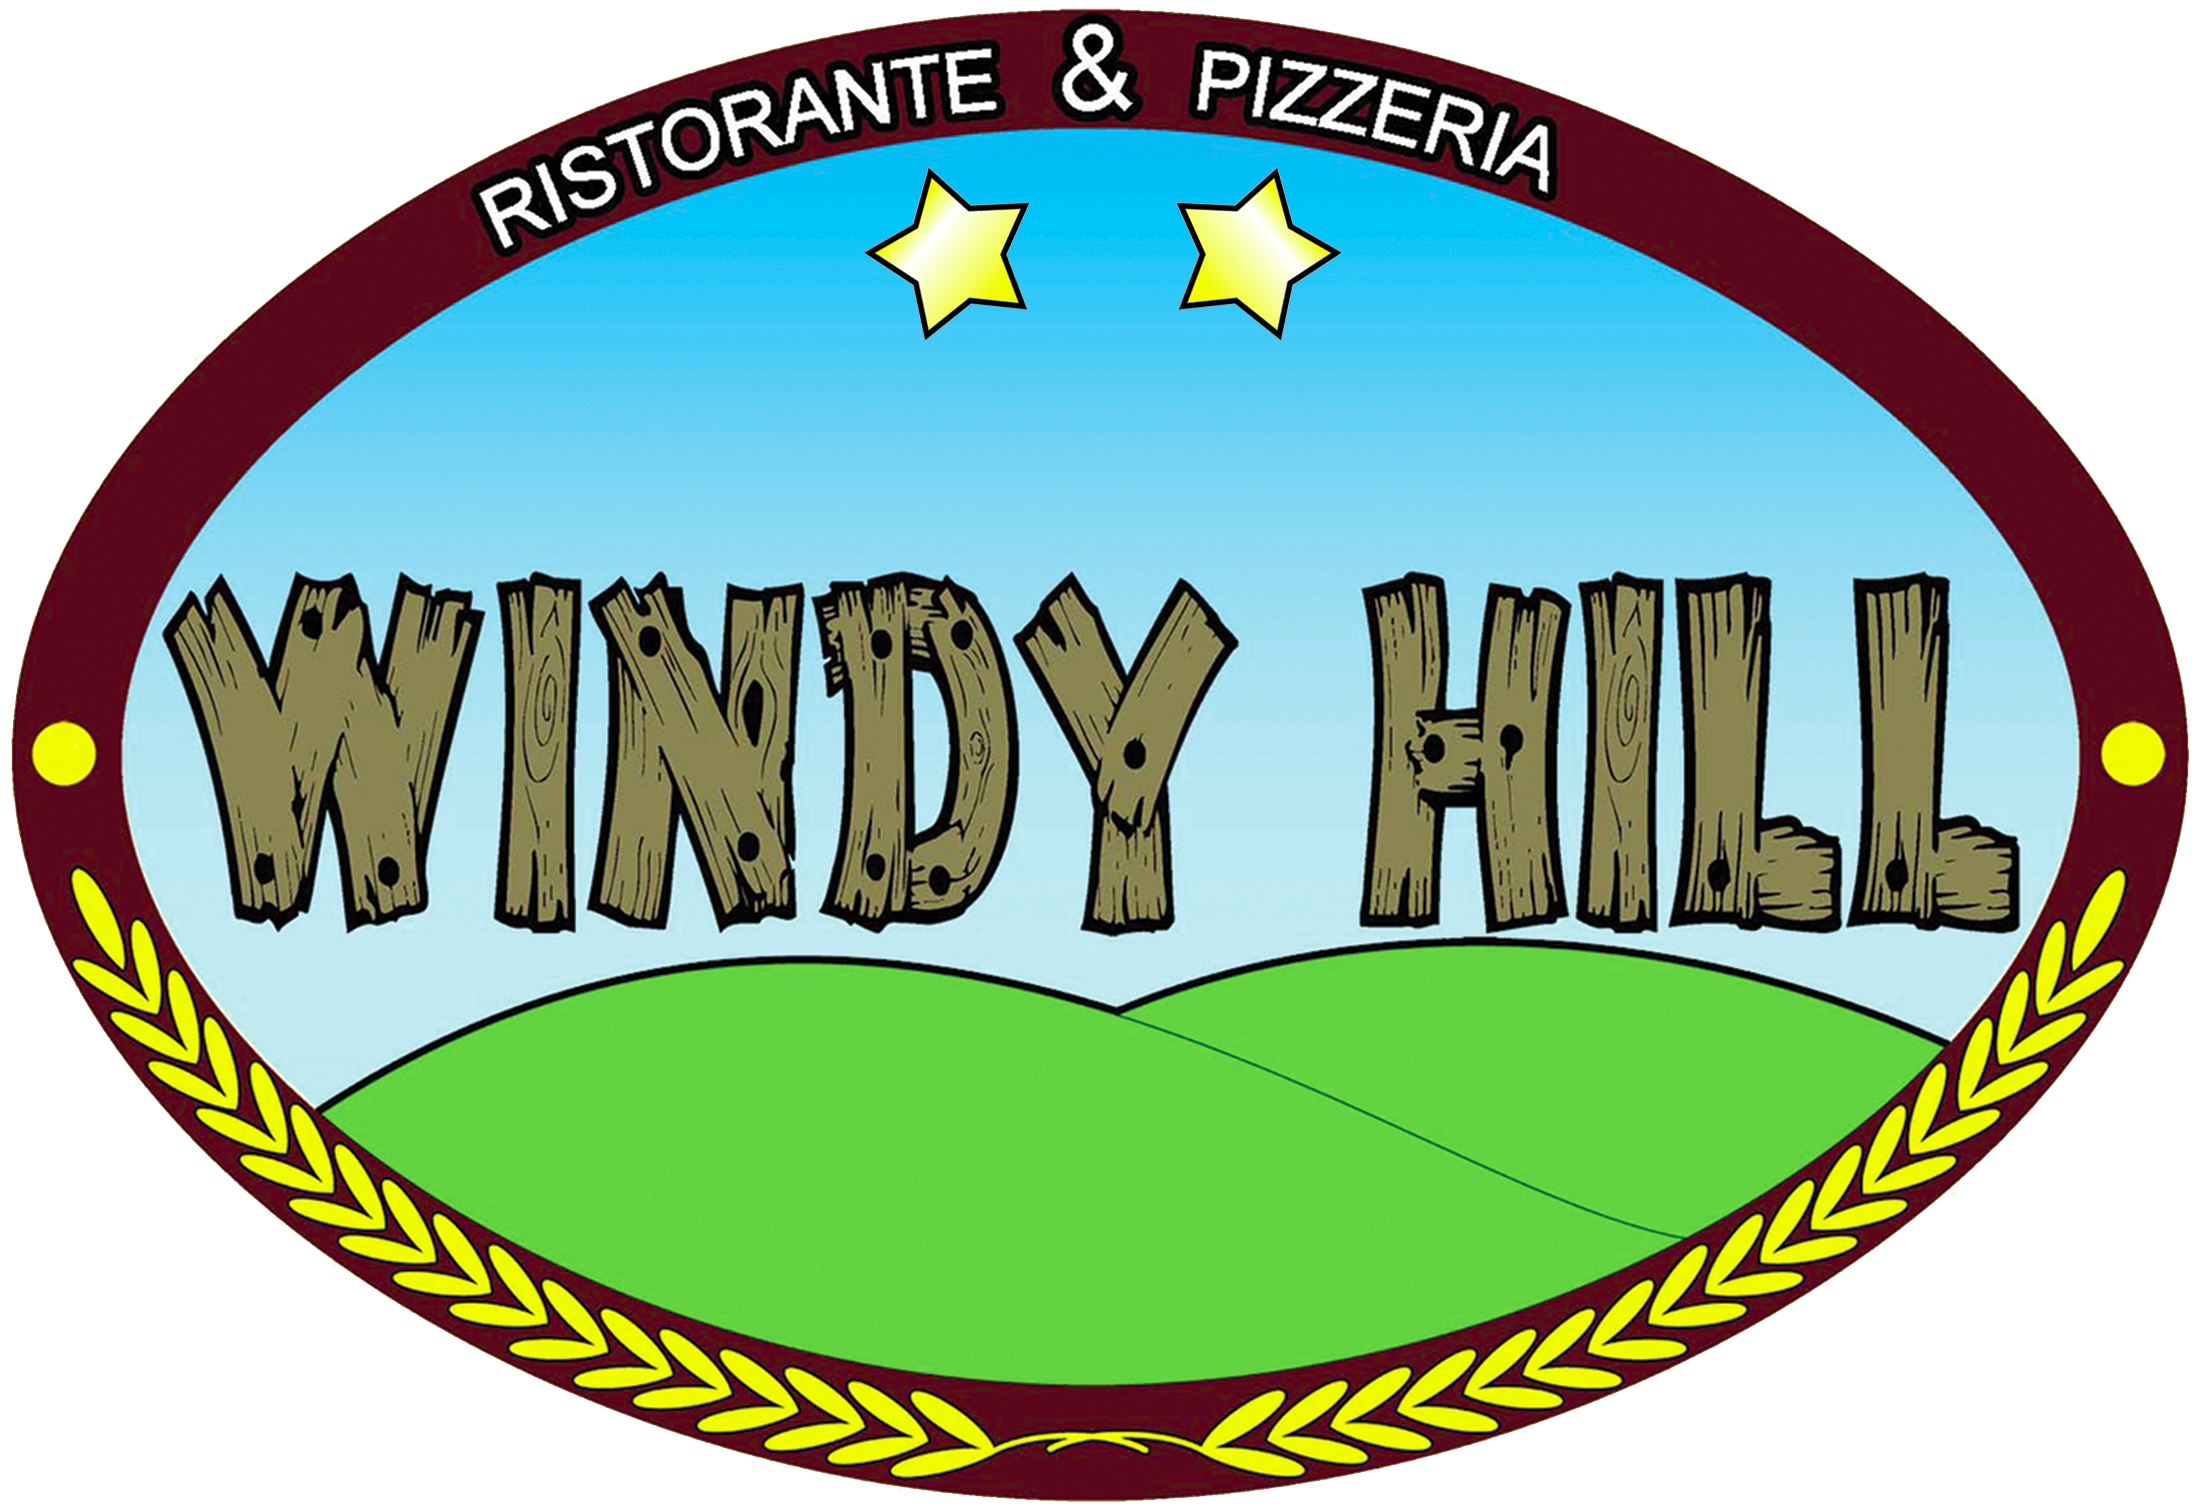 Ristorante Pizzeria Windy Hill - Gallina (Reggio Calabria)